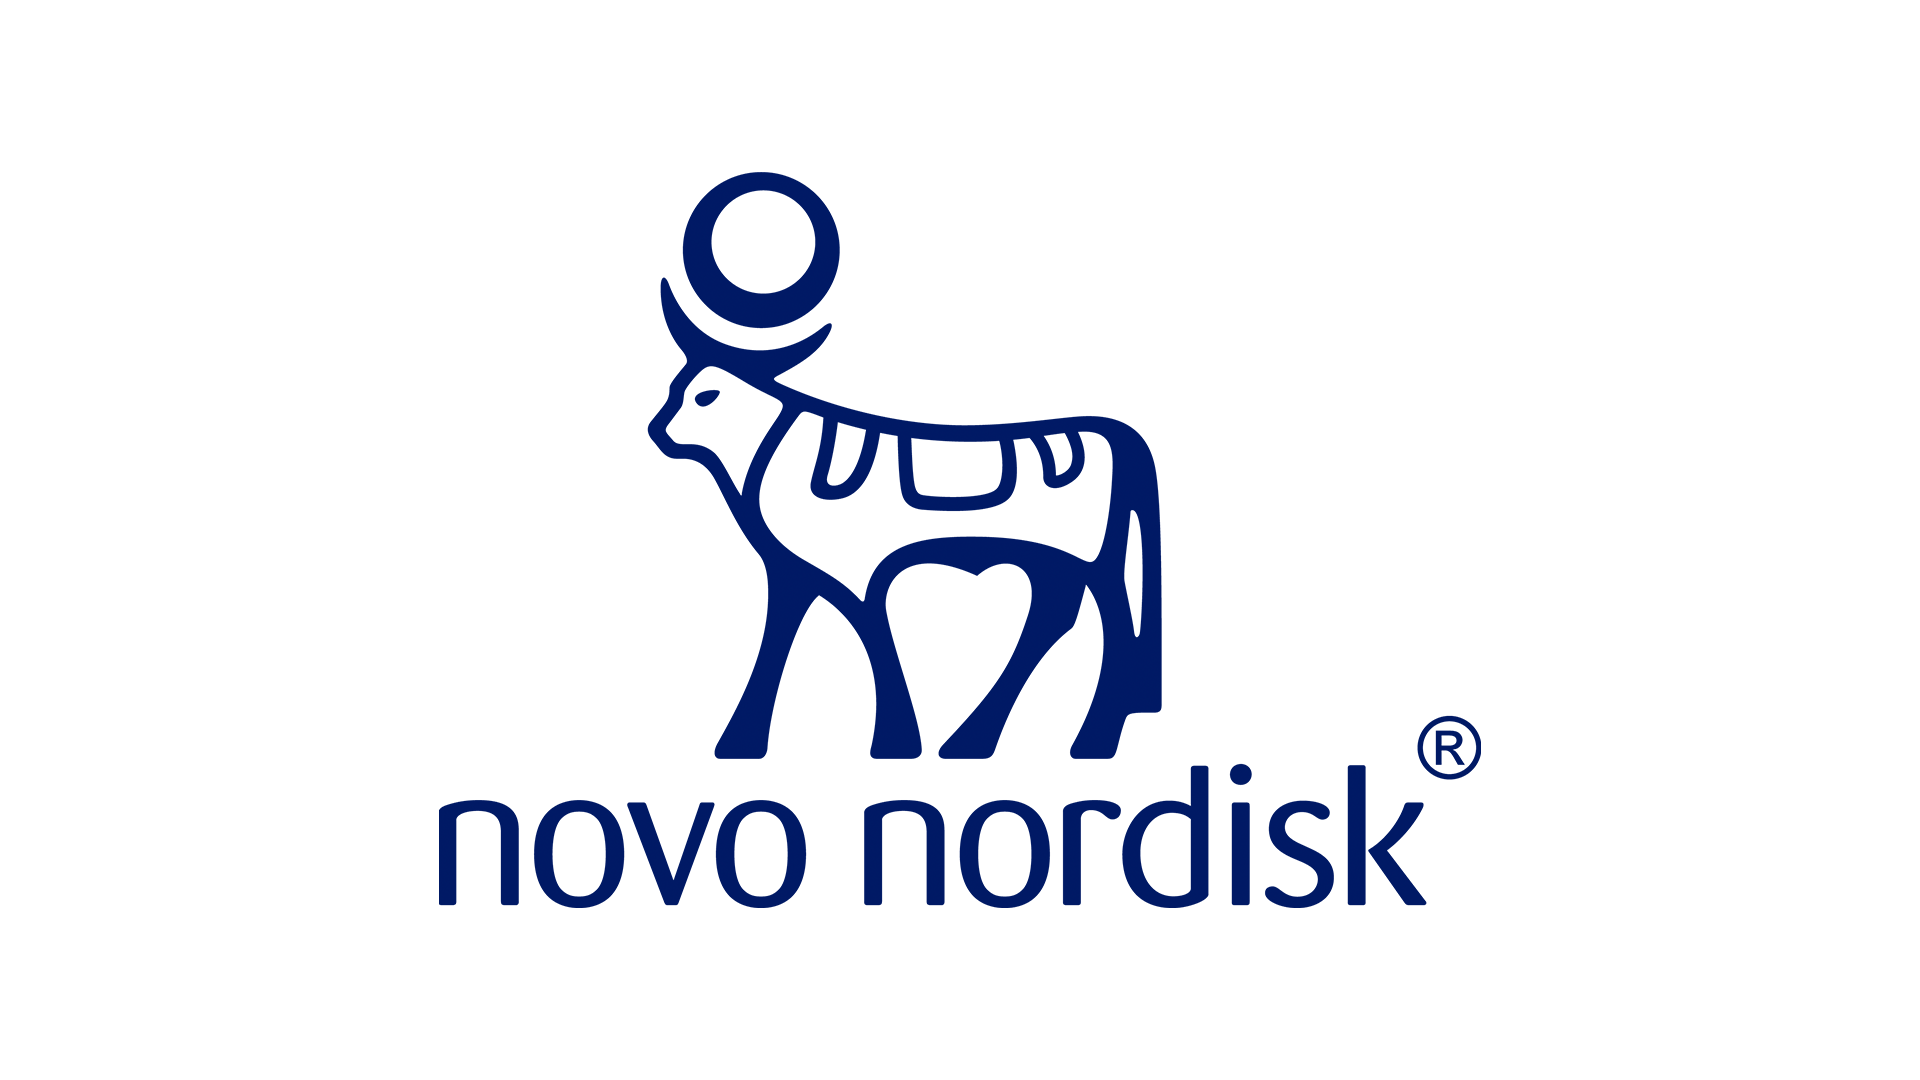 Novo_Nordisk-logo.png